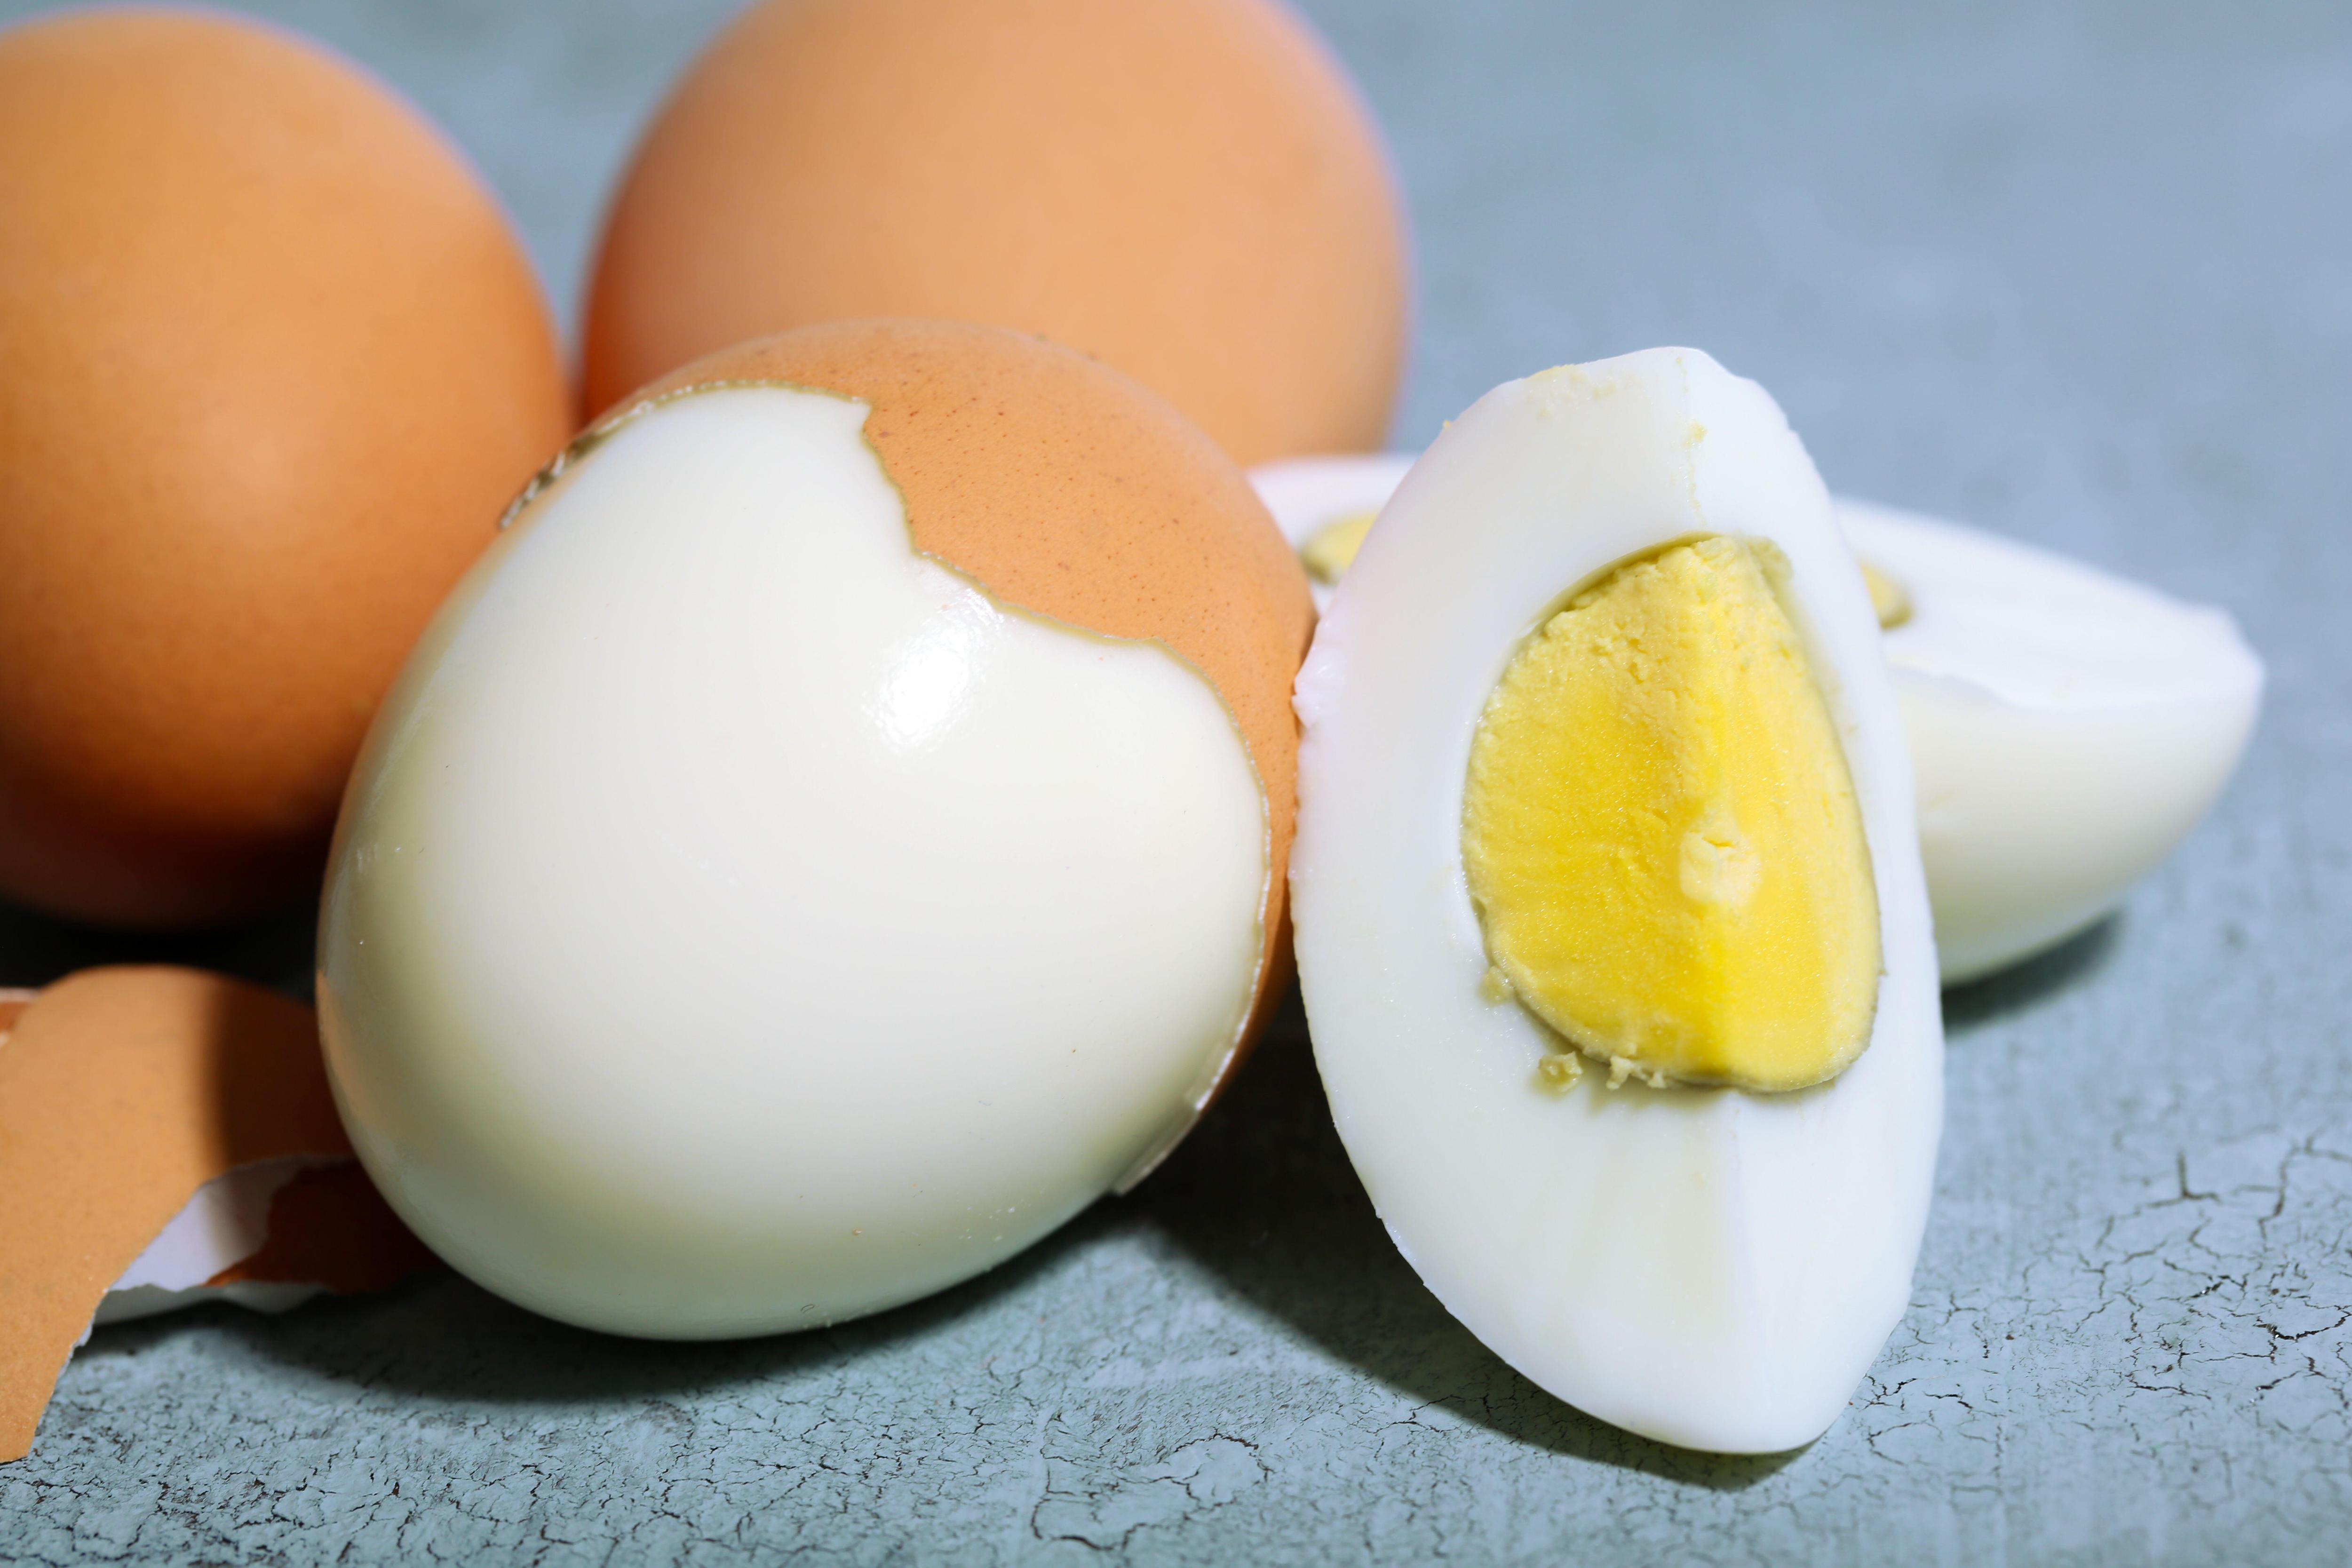 Вареное яйцо желток вокруг серый. Вареное яйцо на белом фоне. Яичный на сером. Серый цвет яйца после варки. Почему яйца серые